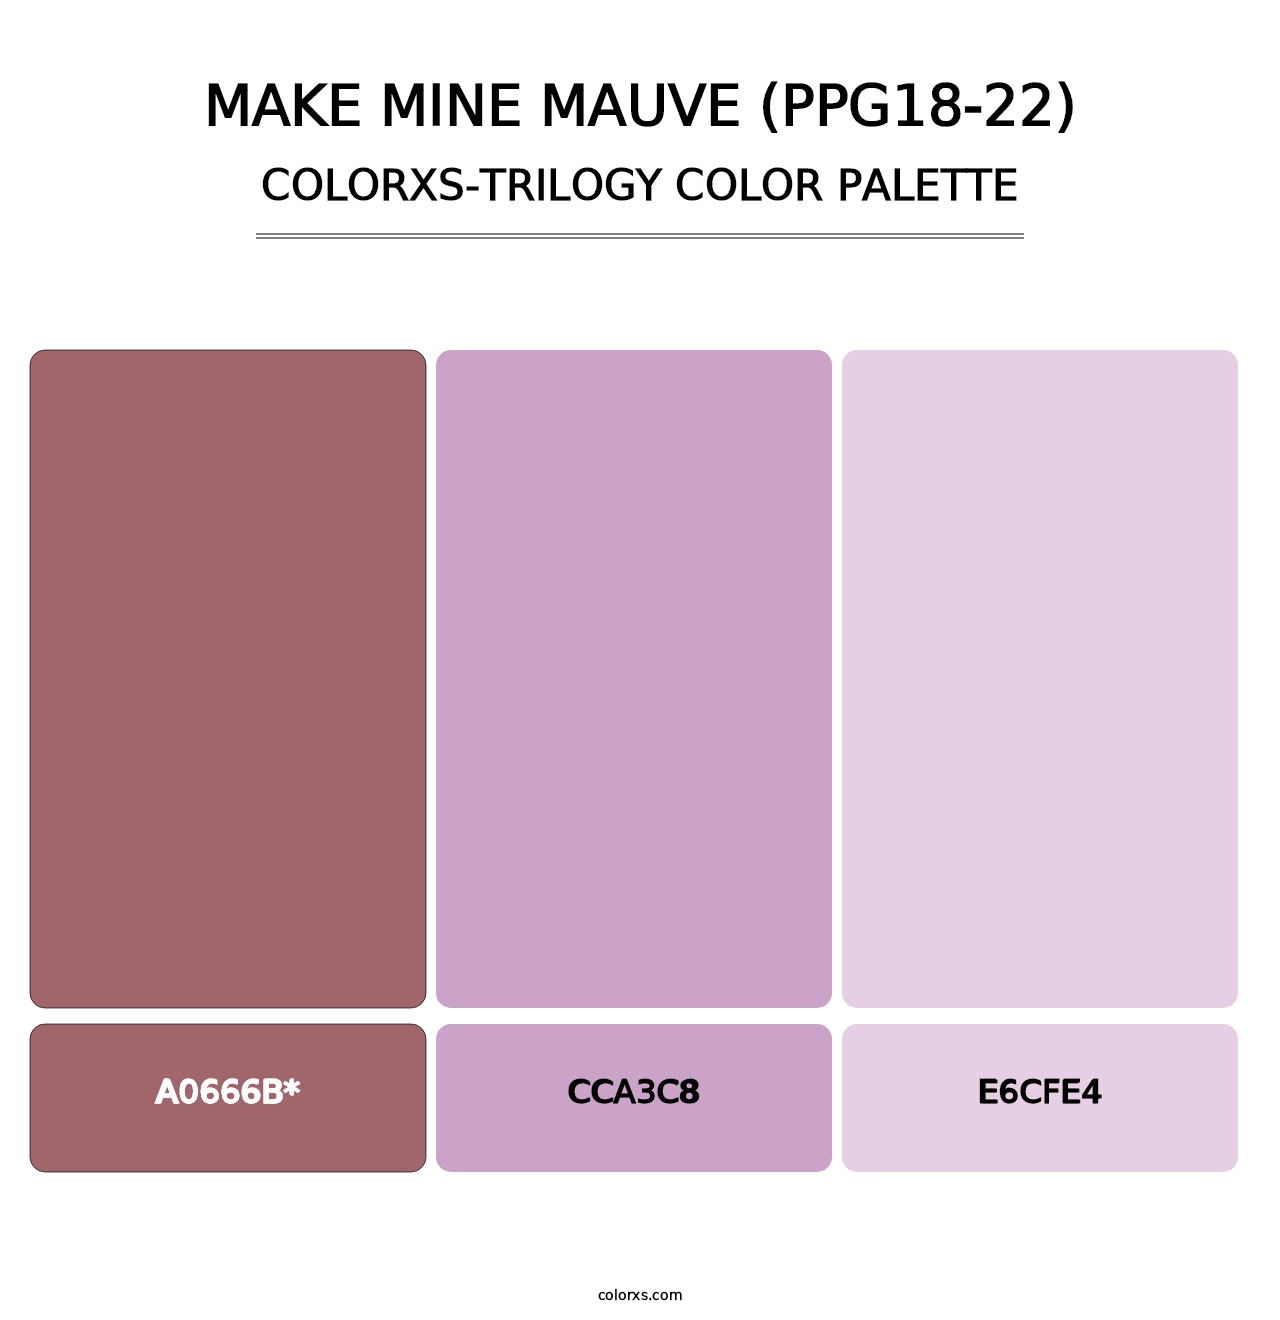 Make Mine Mauve (PPG18-22) - Colorxs Trilogy Palette